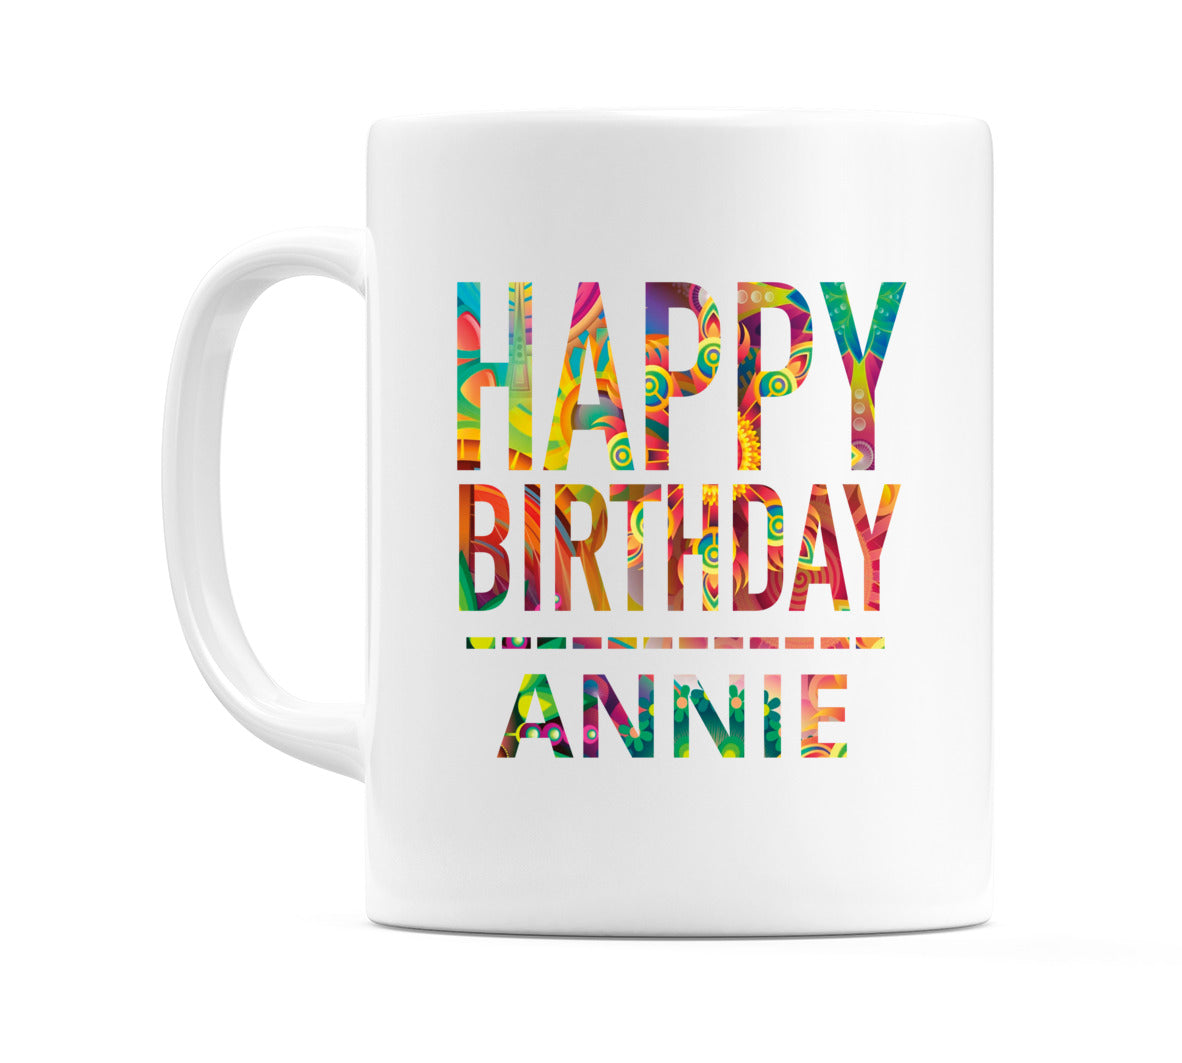 Happy Birthday Annie (Tie Dye Effect) Mug Cup by WeDoMugs